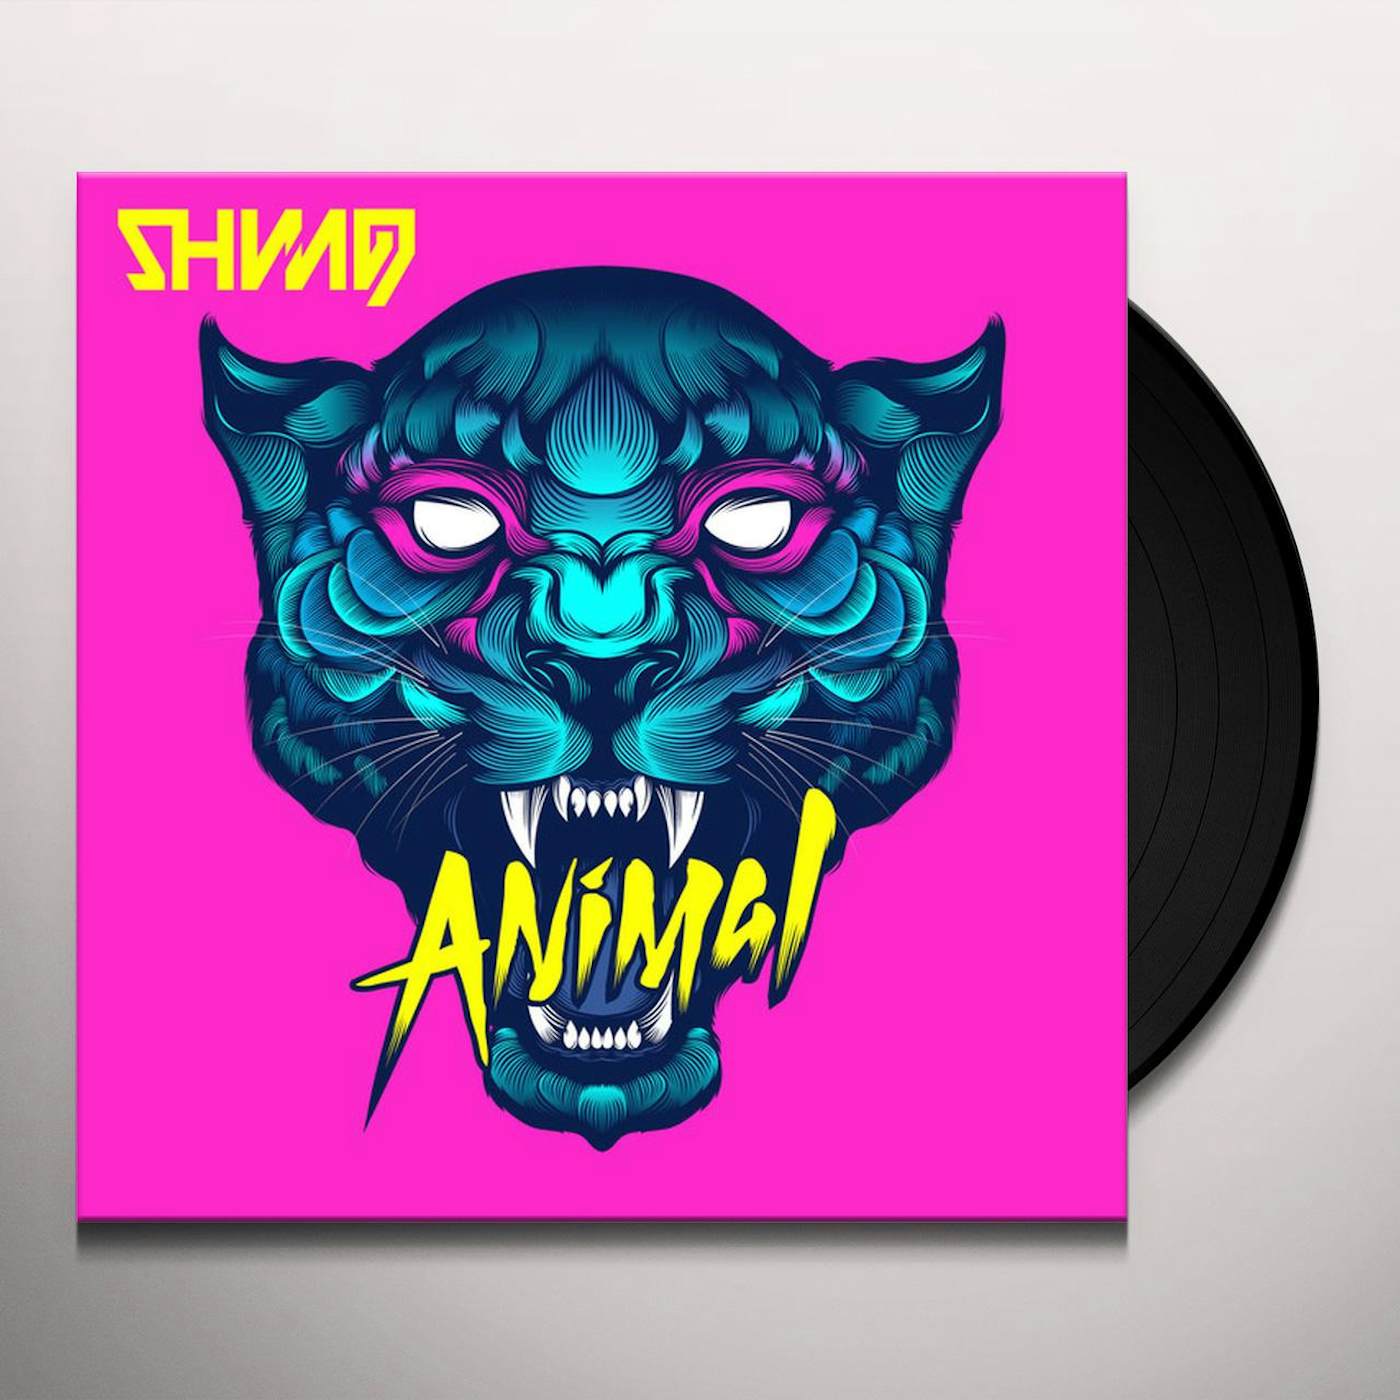 Shining Animal Vinyl Record